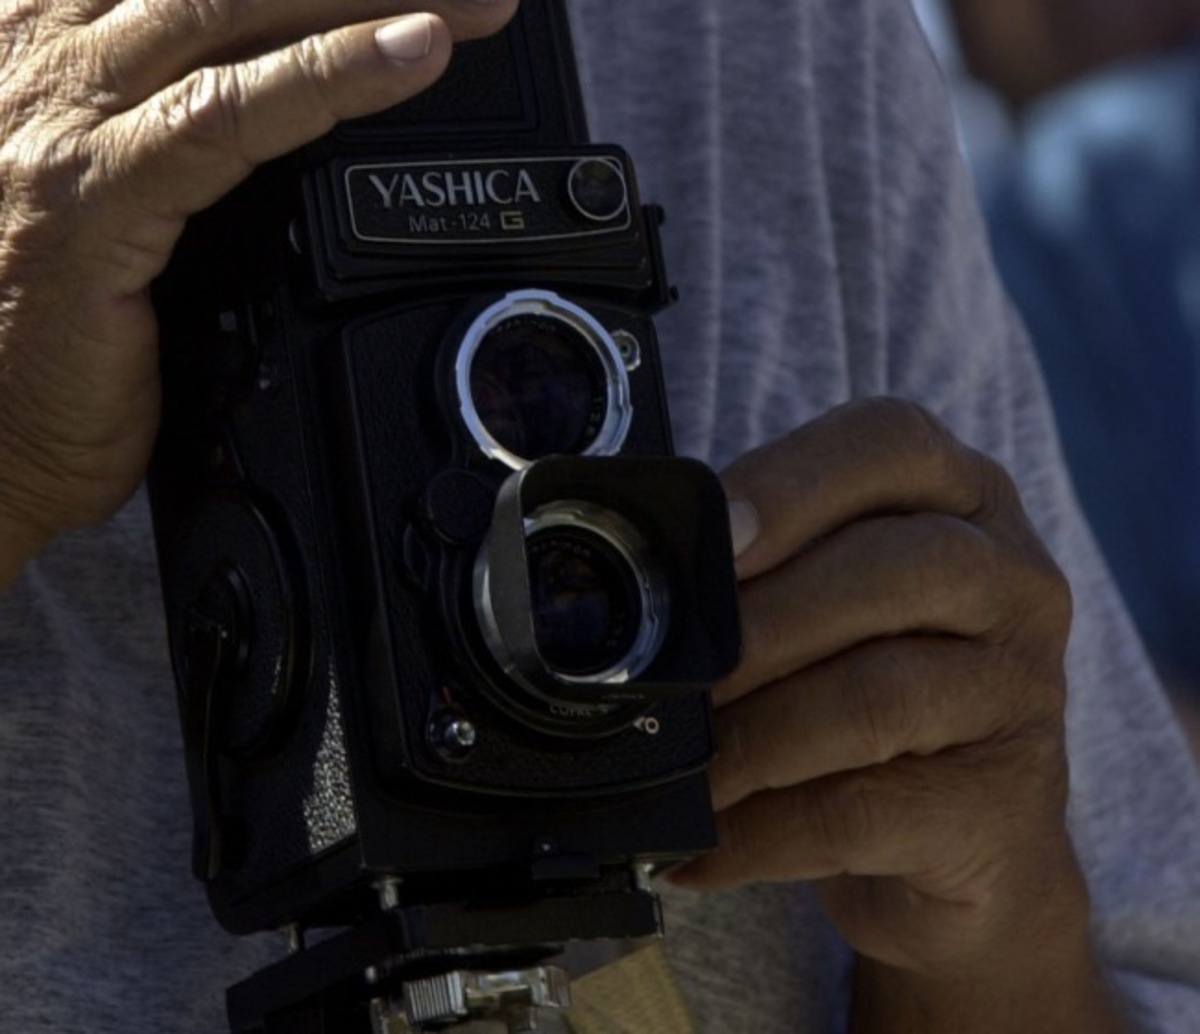 Creta: il cellulare e la macchina fotografica che aveva in mano lo hanno messo nei guai